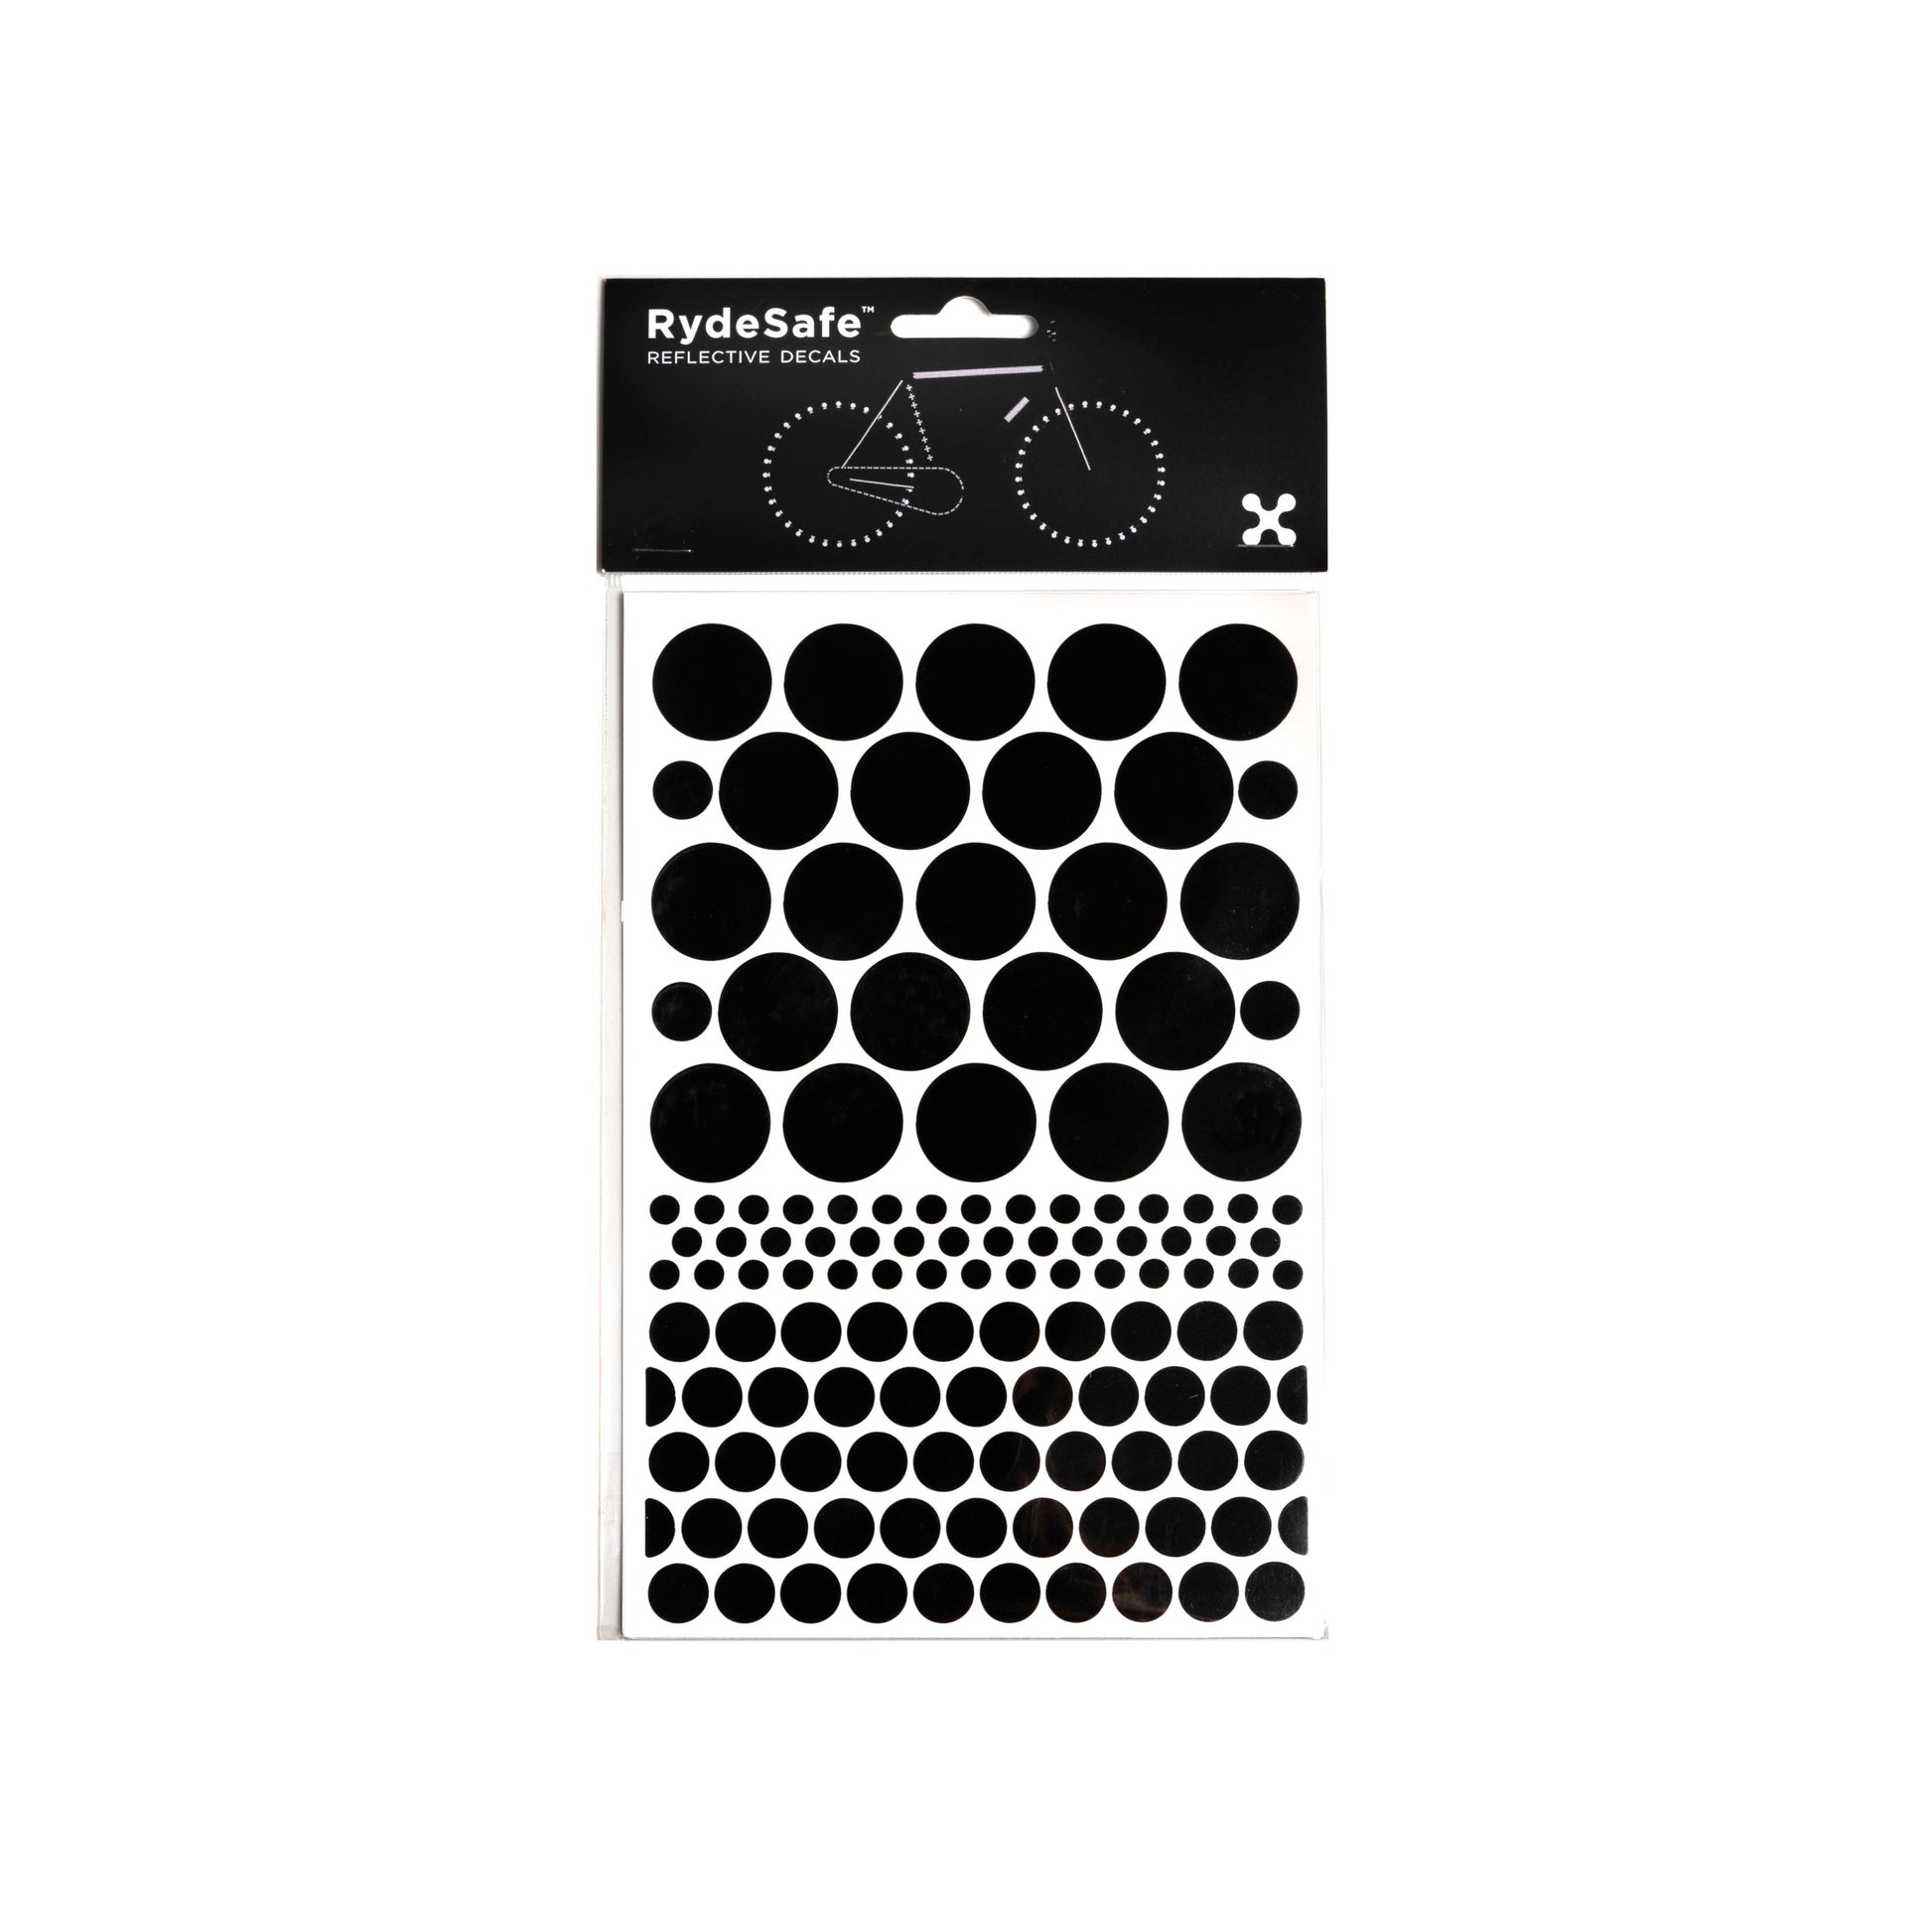 https://rydesafe.com/cdn/shop/products/silo-reflective-dots-stickers-by-rydesafe-black.jpg?v=1669134849&width=1946